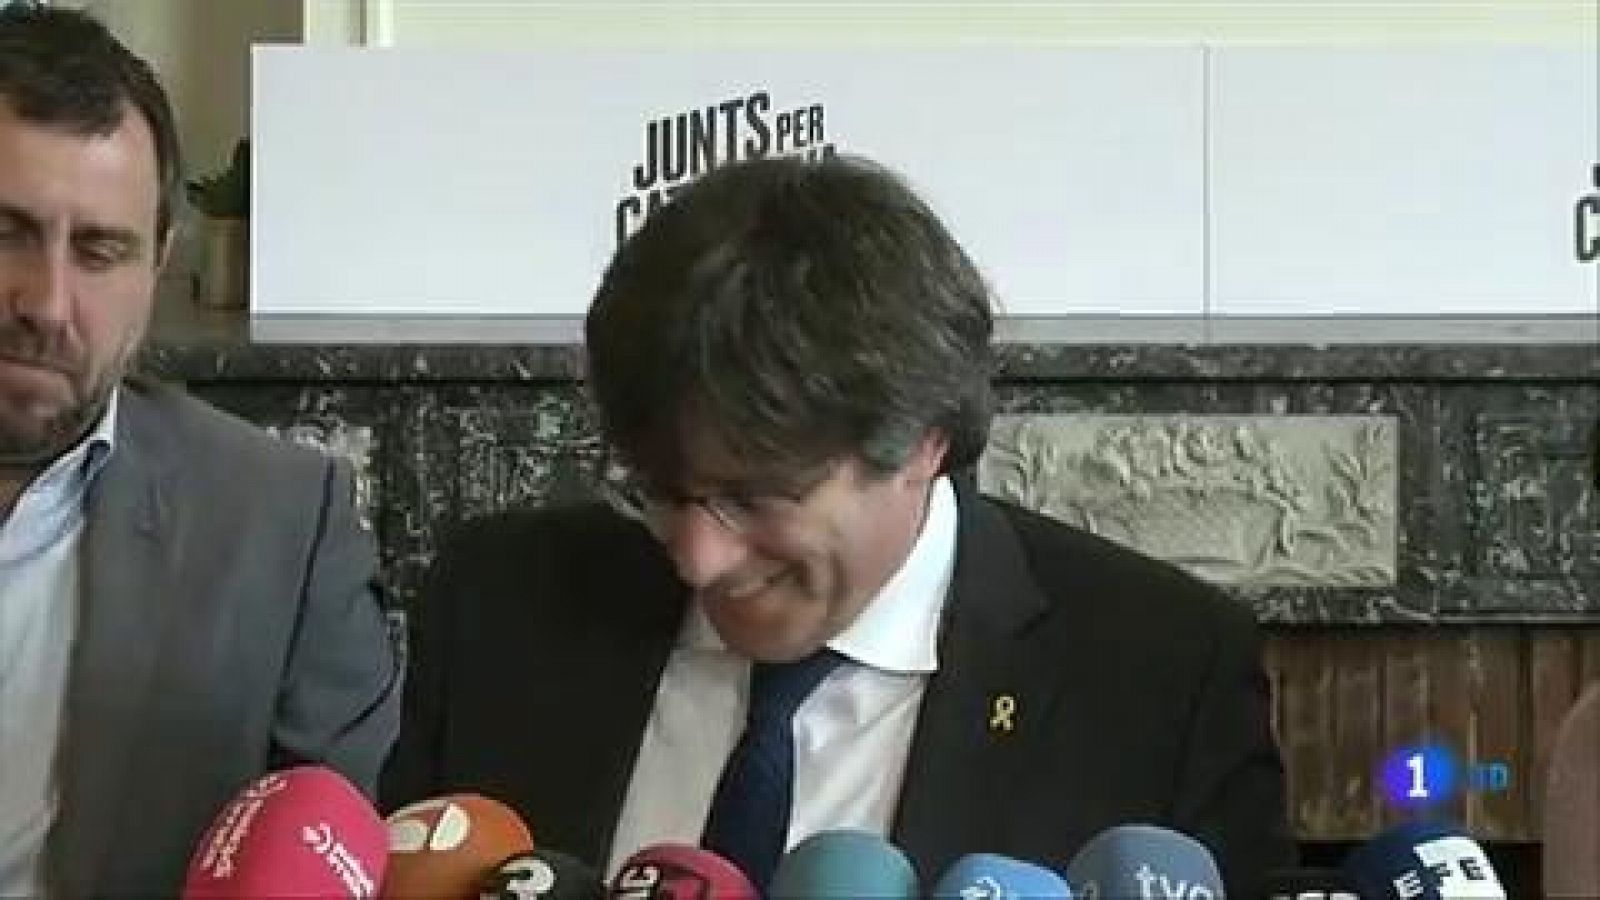 El TS decidirá si Puigdemont puede presentarse a las elecciones al Parlamento Europeo del 26 de mayo